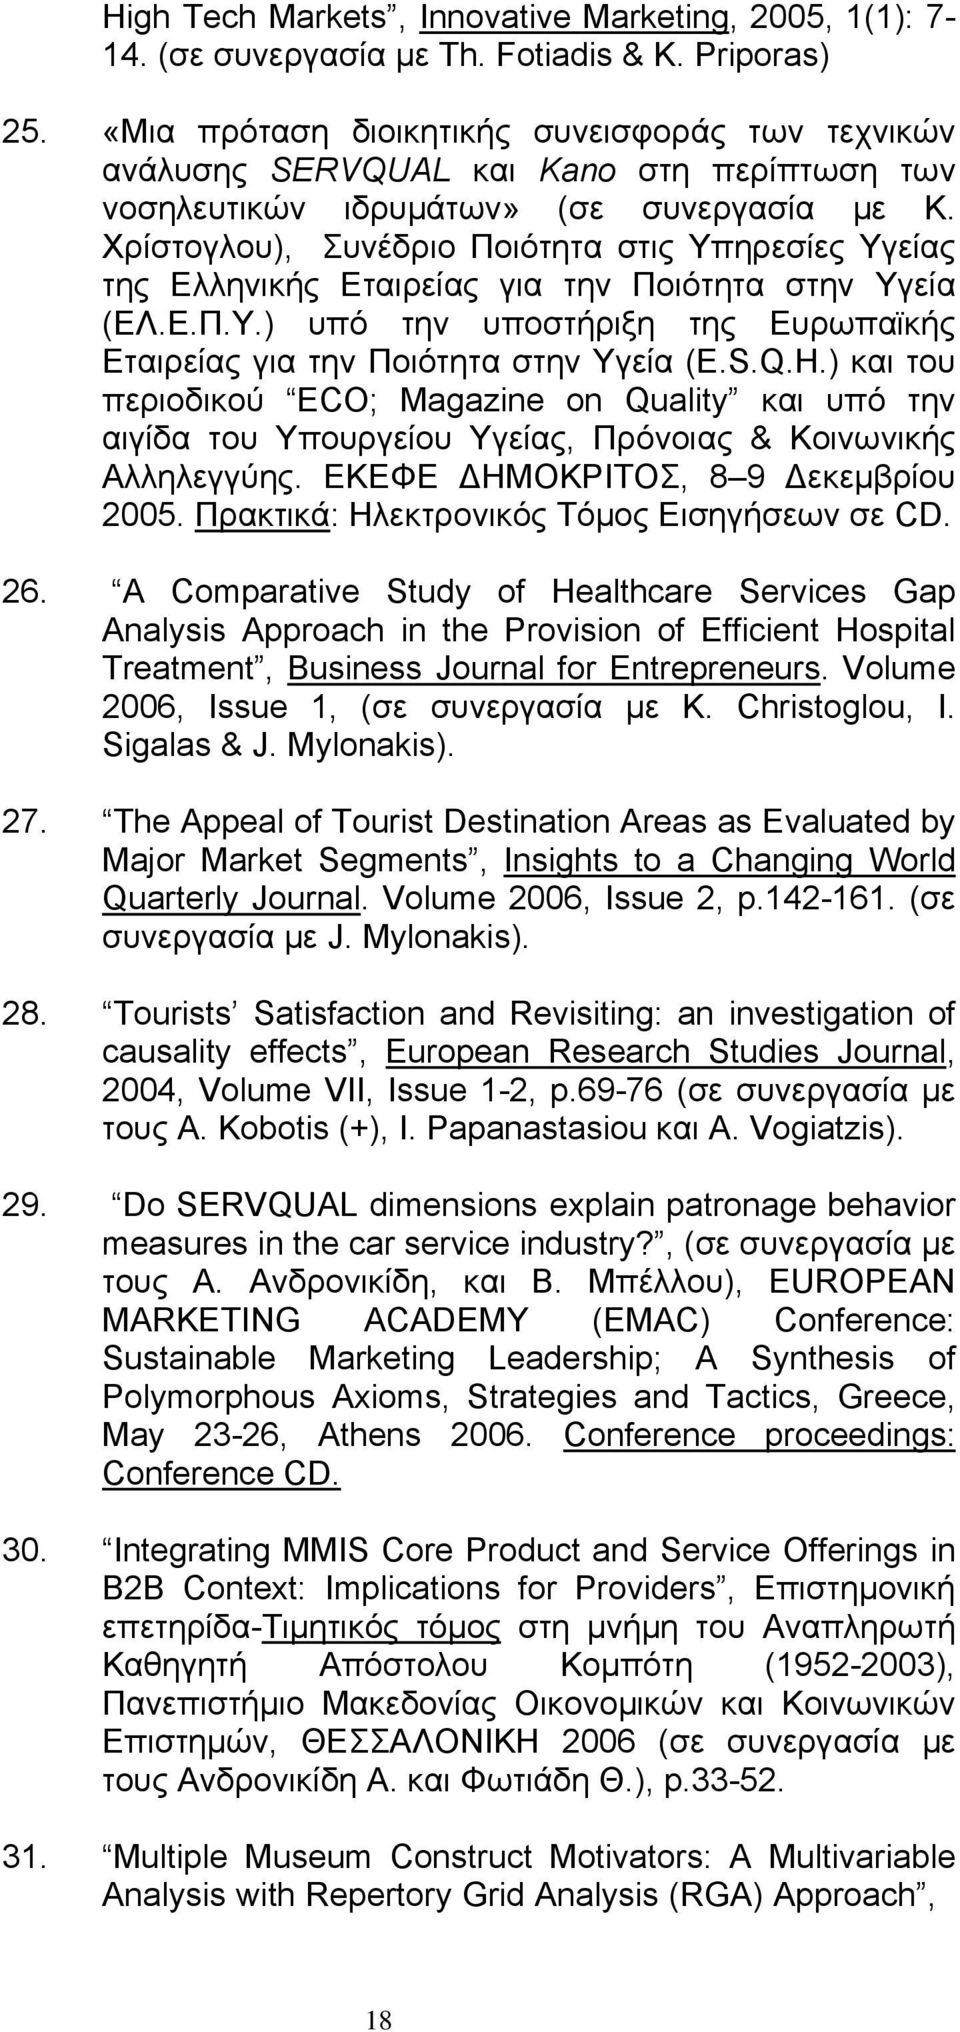 Χρίστογλου), Συνέδριο Ποιότητα στις Υπηρεσίες Υγείας της Ελληνικής Εταιρείας για την Ποιότητα στην Υγεία (ΕΛ.Ε.Π.Υ.) υπό την υποστήριξη της Ευρωπαϊκής Εταιρείας για την Ποιότητα στην Υγεία (E.S.Q.H.